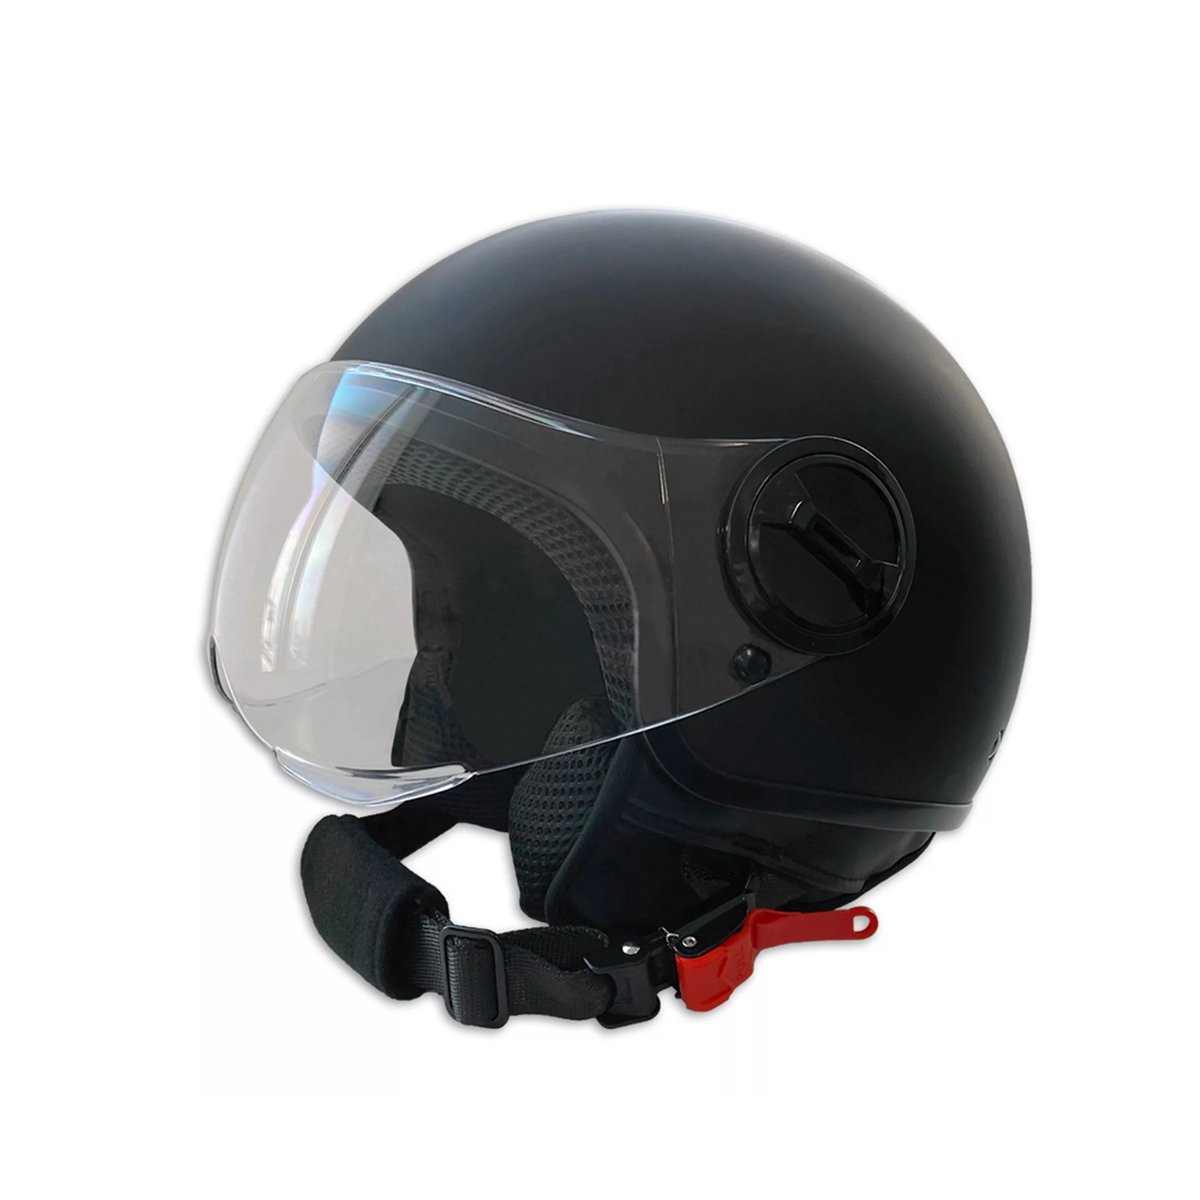 PRO-TECT - EU Goedgekeurde bromfiets/snorfiets helm - Jethelm Urban 22 - Maat XL 59/60 CM